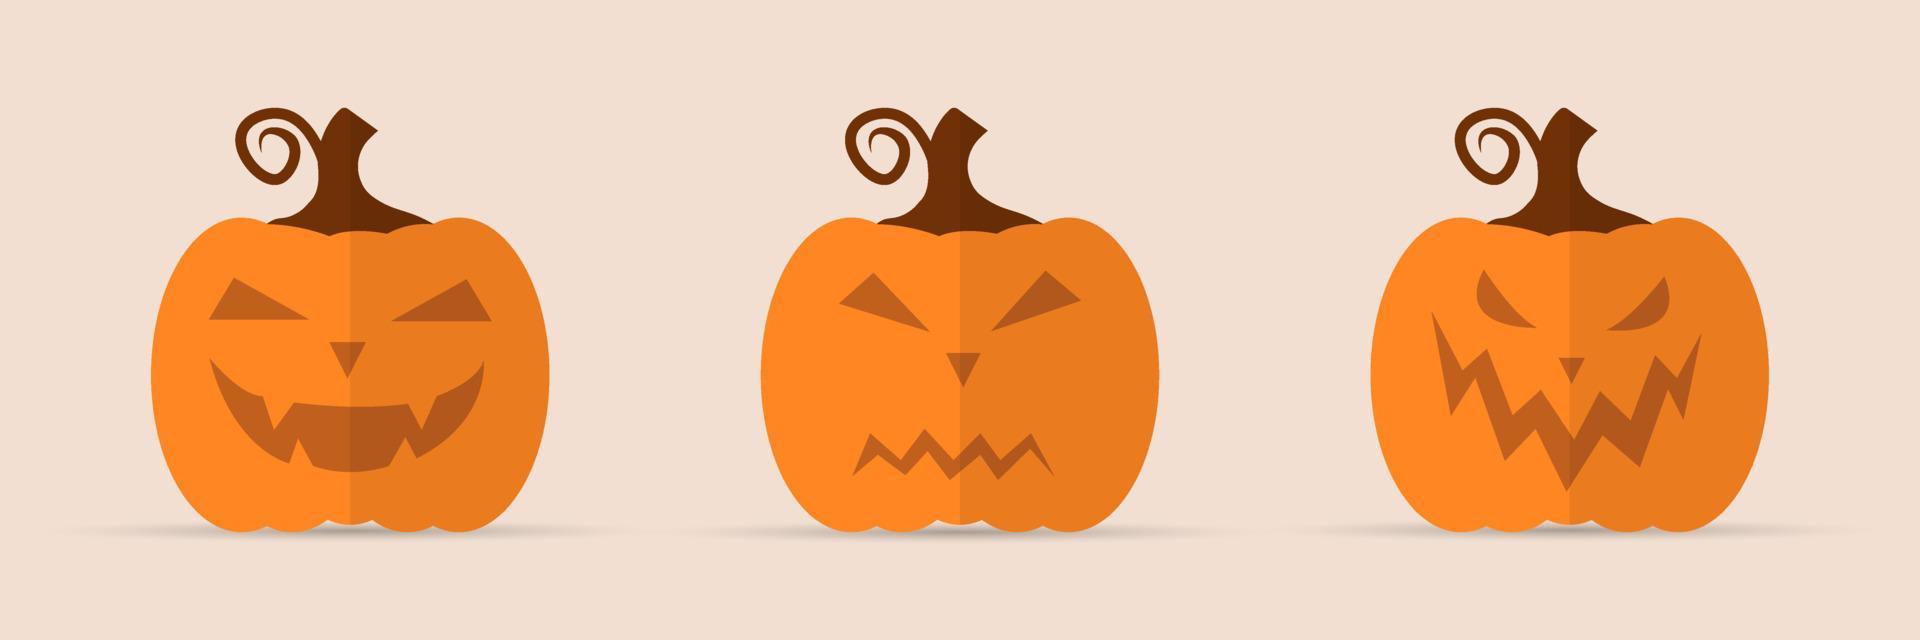 conjunto de calabazas de miedo de halloween de vacaciones. caras graciosas. vacaciones de otoño. ilustración vectorial aislada vector